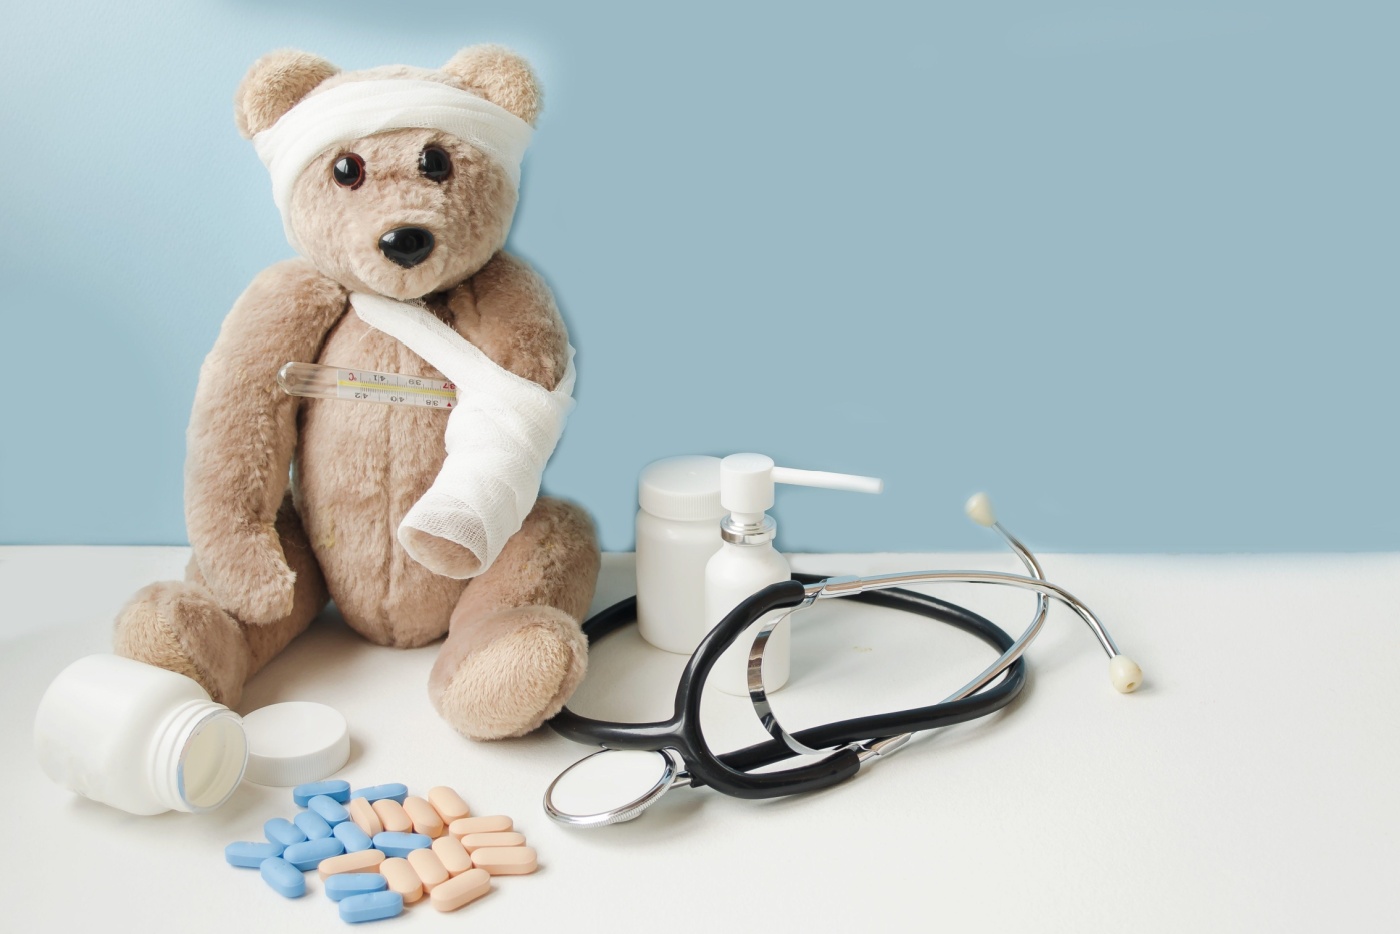 Foto: Shutterstock, En bamse med brukket pote og vondt hode sitter på blå bakgrunn, ved siden av piller, vitaminer og et stetoskop